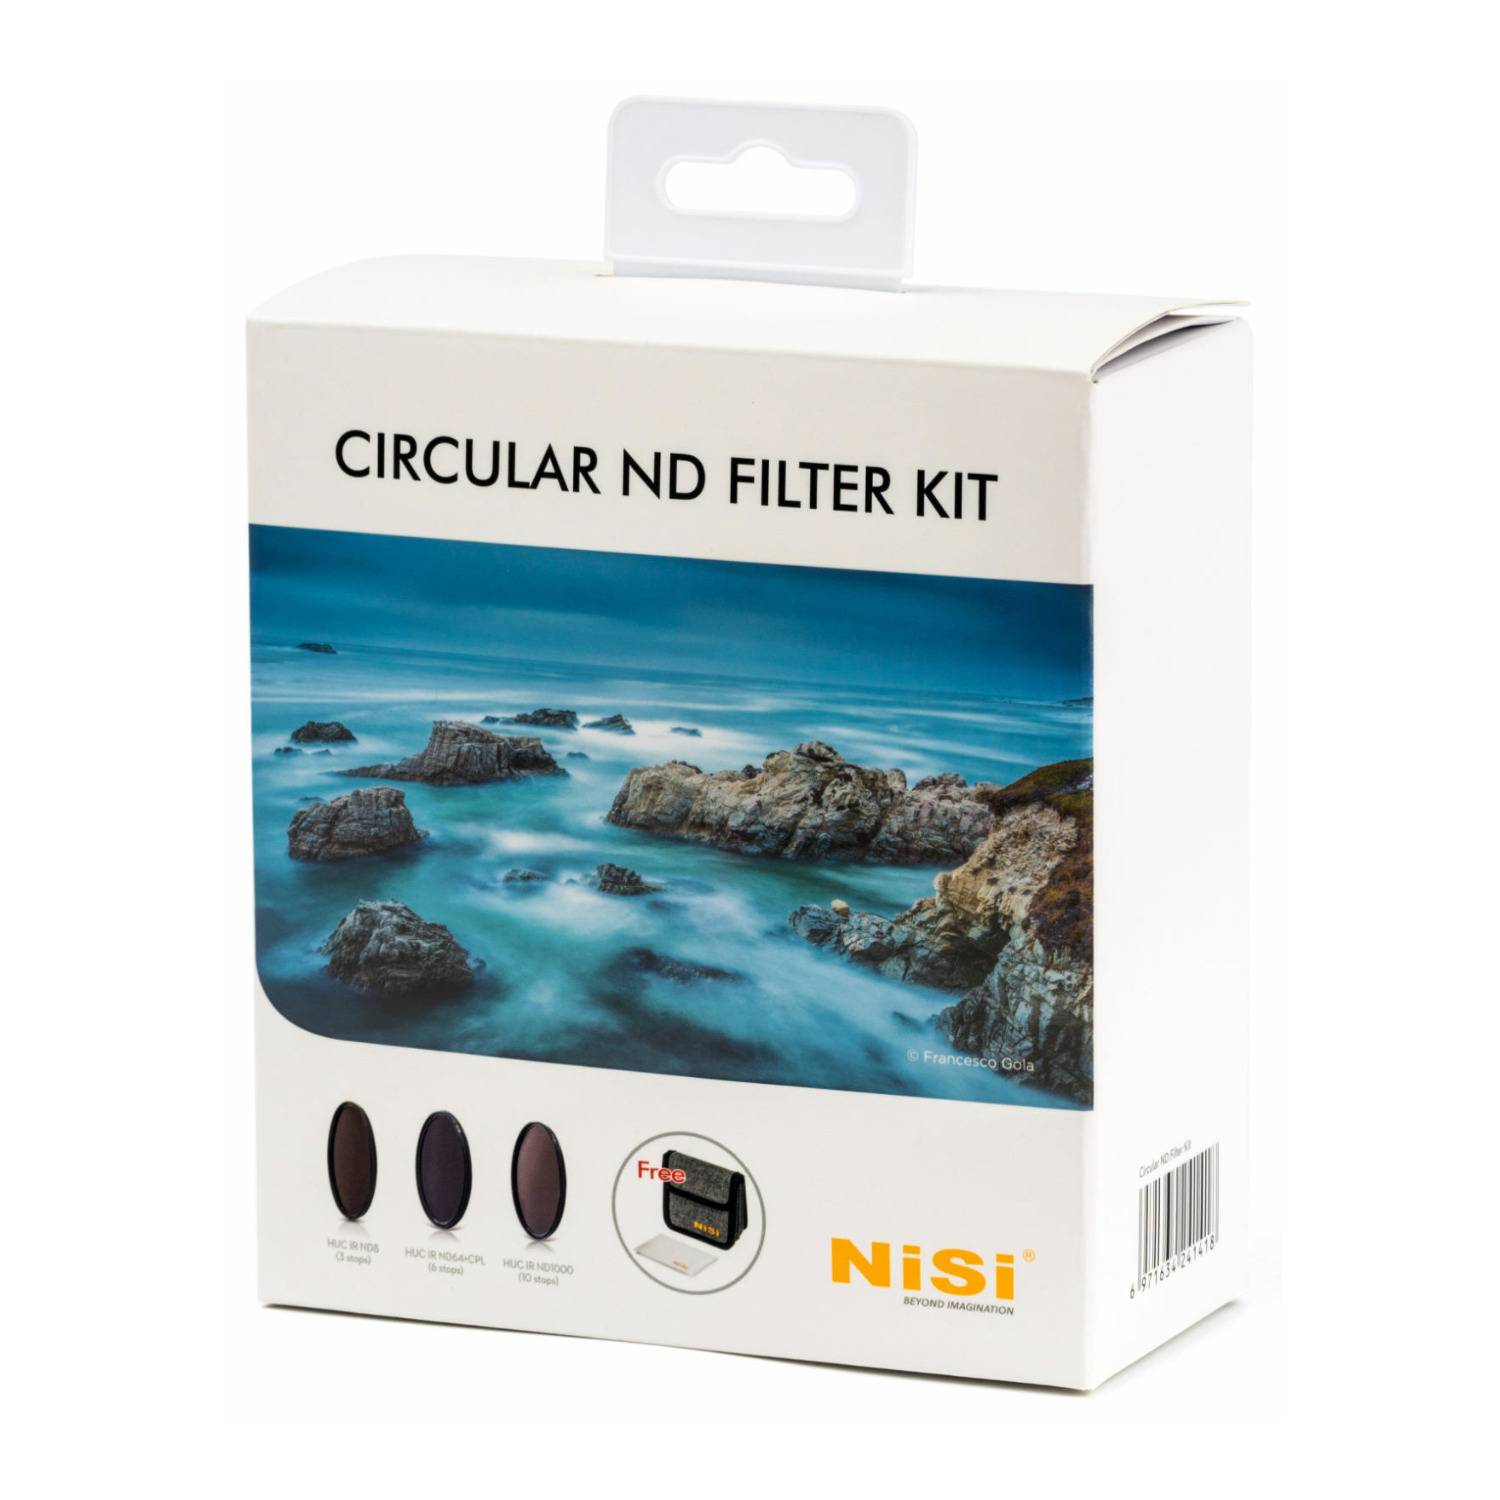 NiSi 82 mm Circular ND Filter Kit